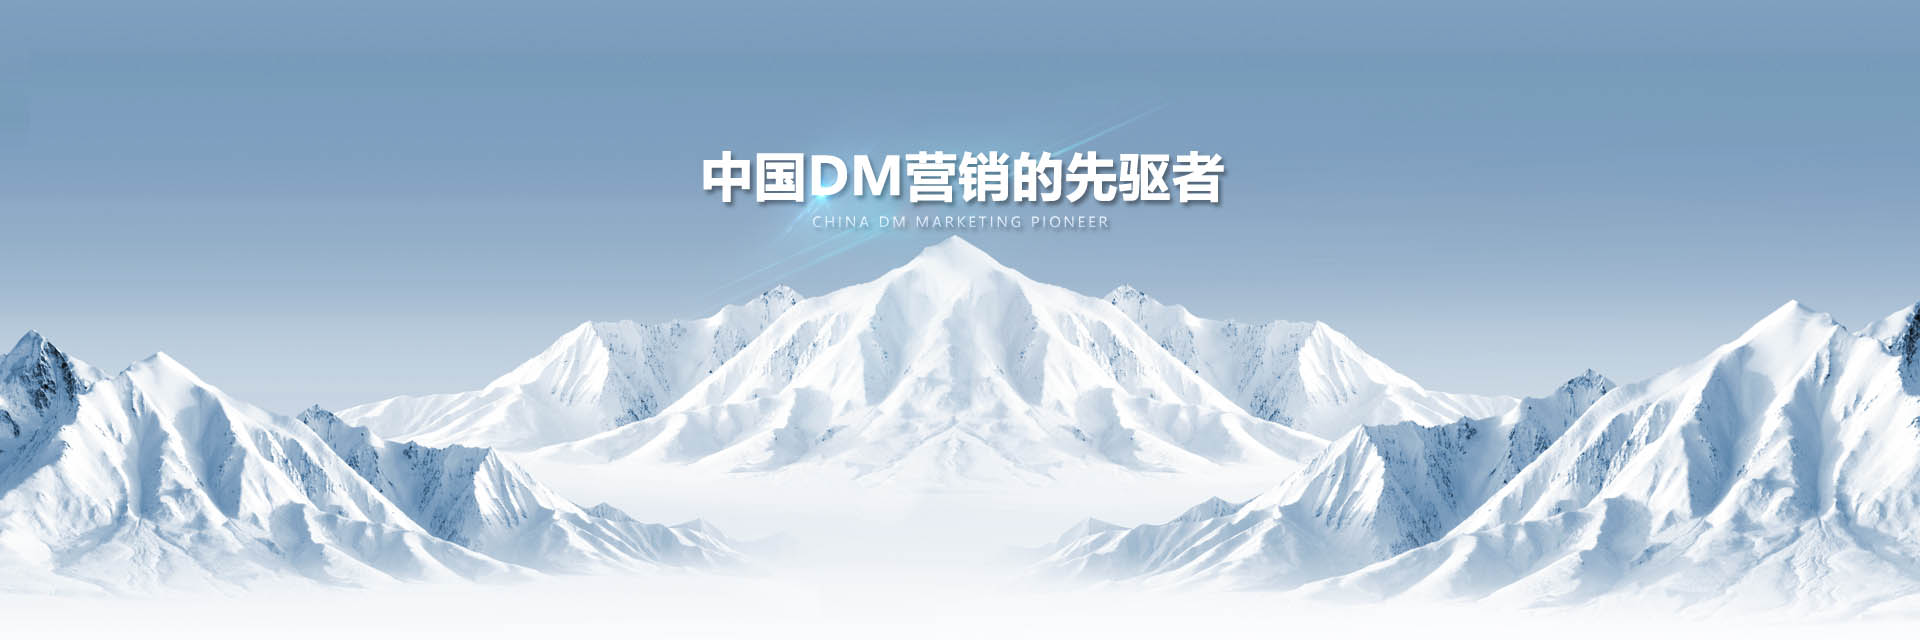 上海DM营销方案